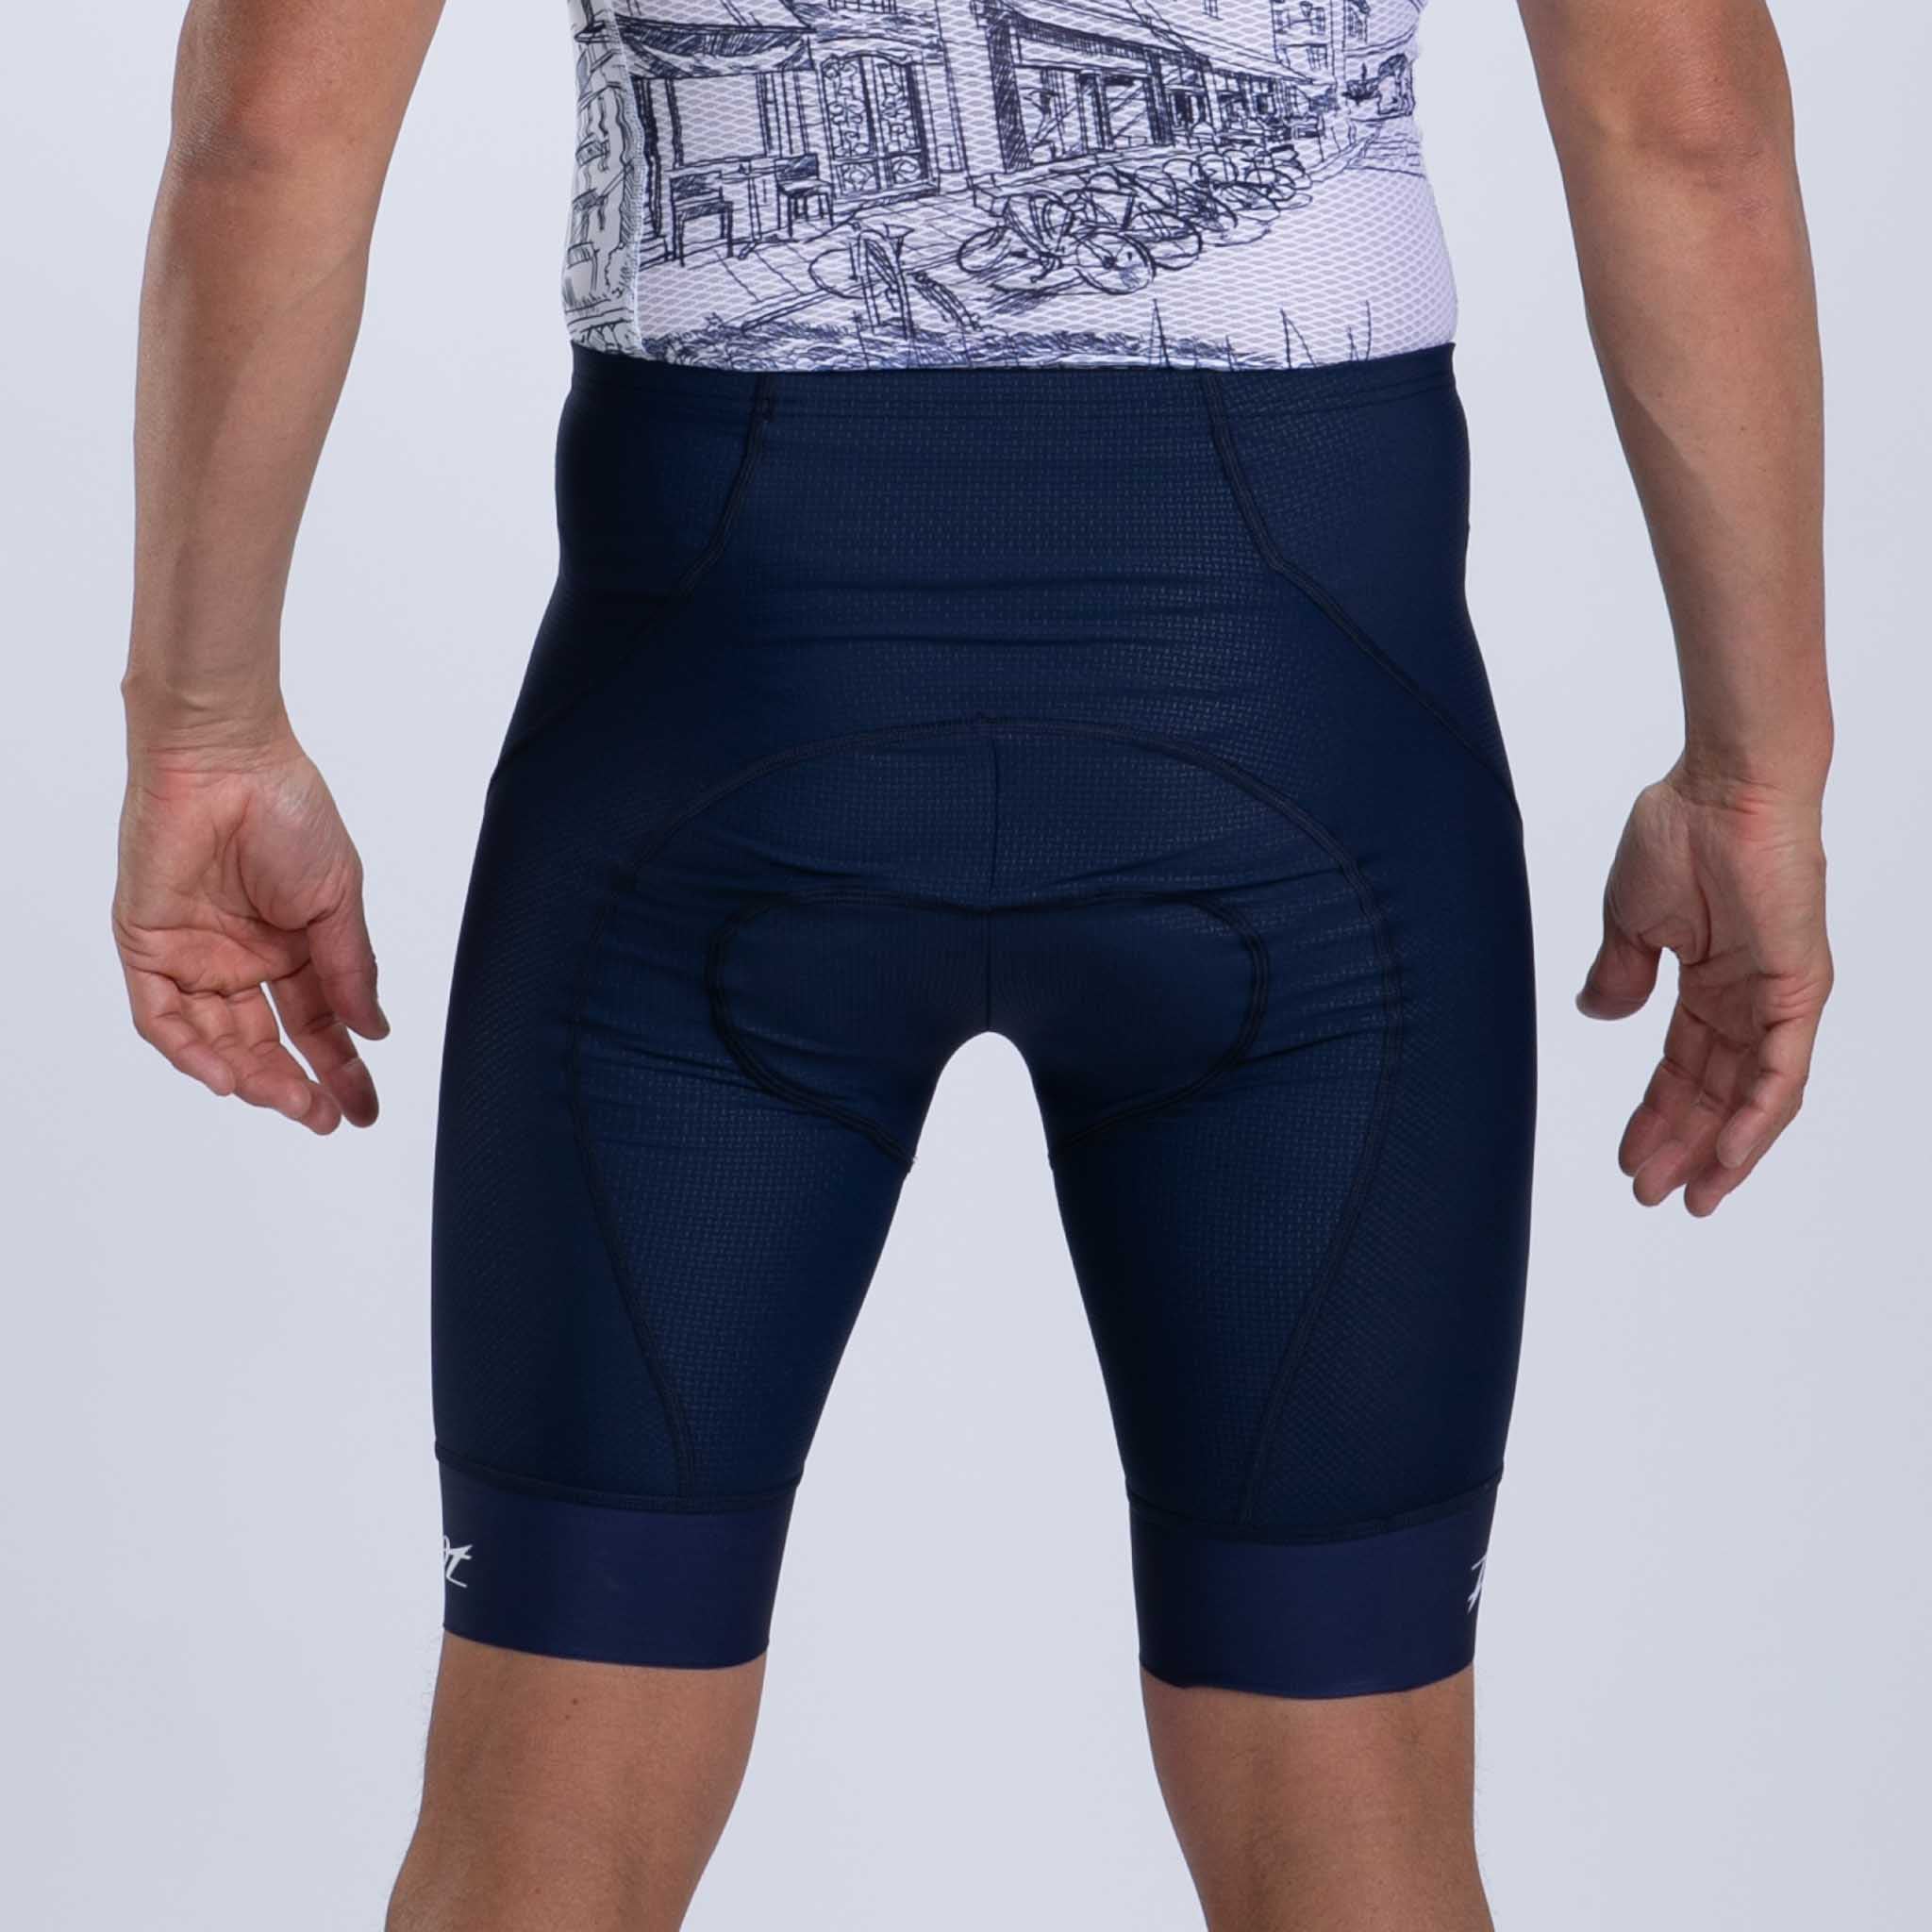 Men's Ltd Cycle Exos Short - Cote d'Azur